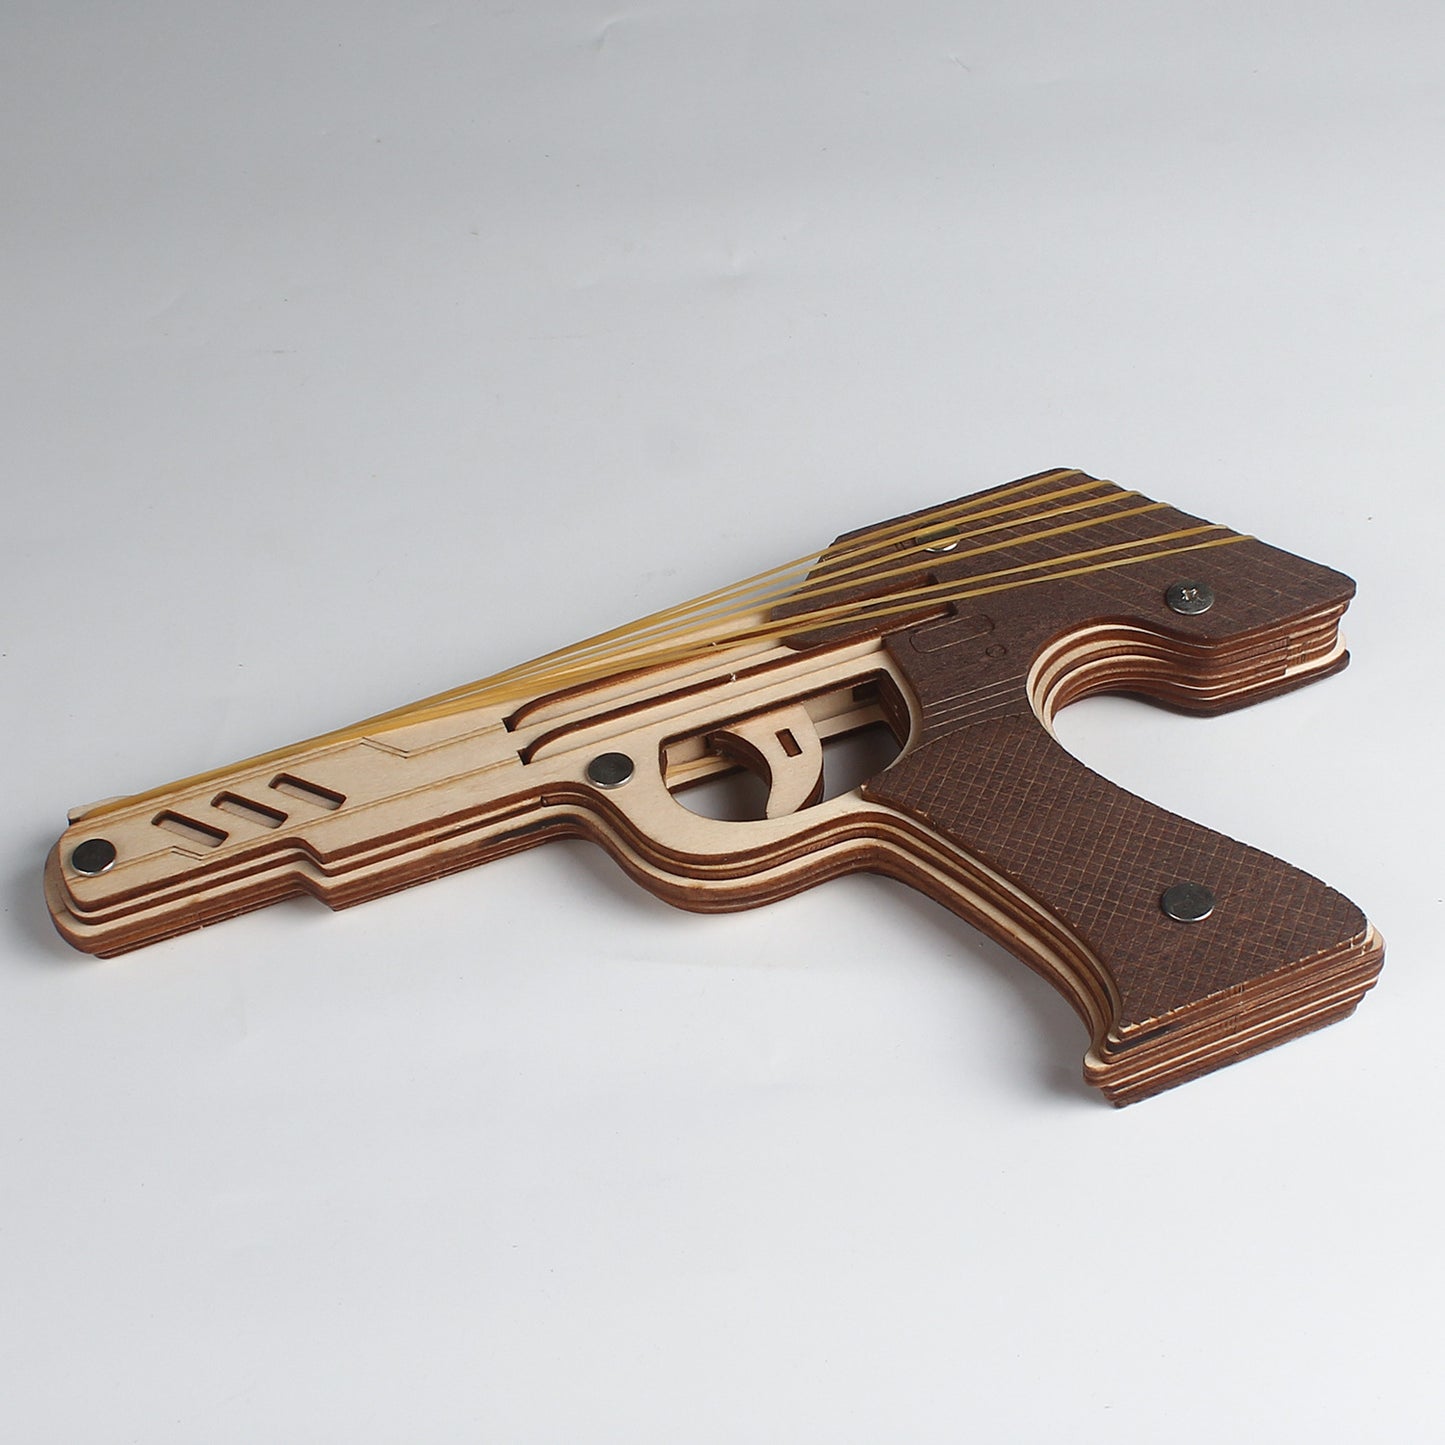 DIY 3D Semi-auto Rubber Band Pistol Wooden Puzzle Kit